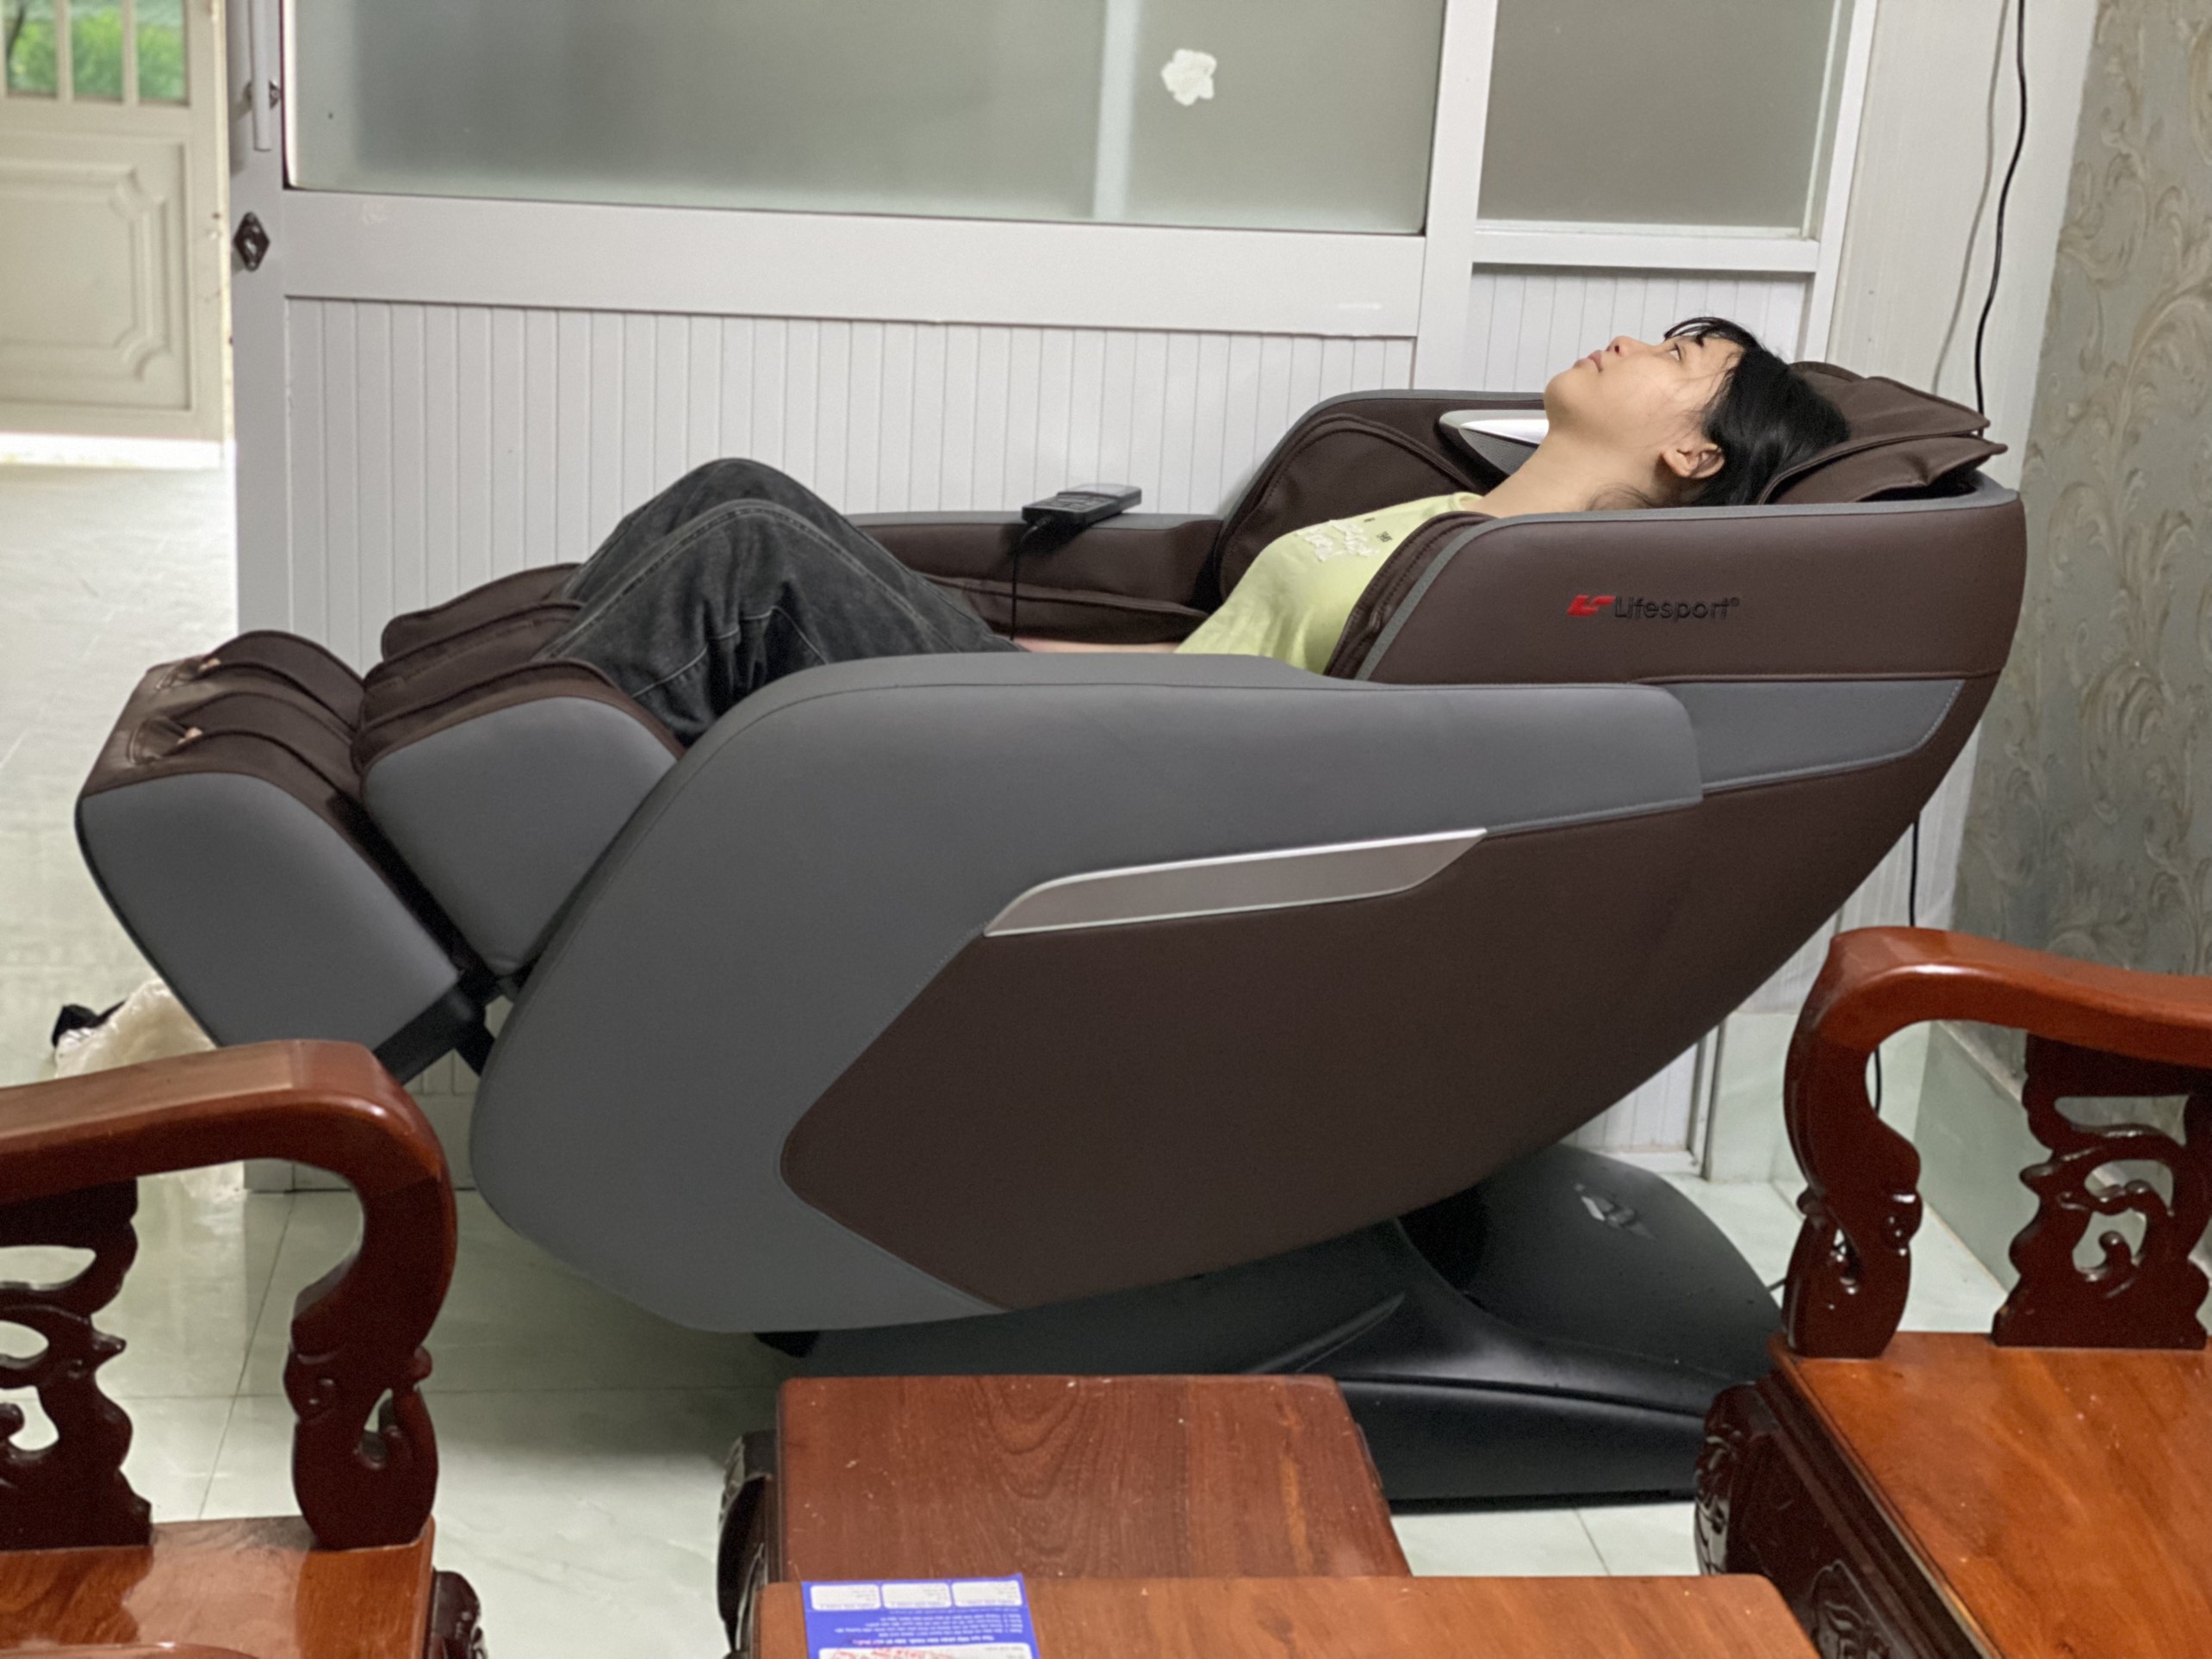 Ghế massage Lifesport LS-399 - Chuyên gia trị liệu nhức mỏi